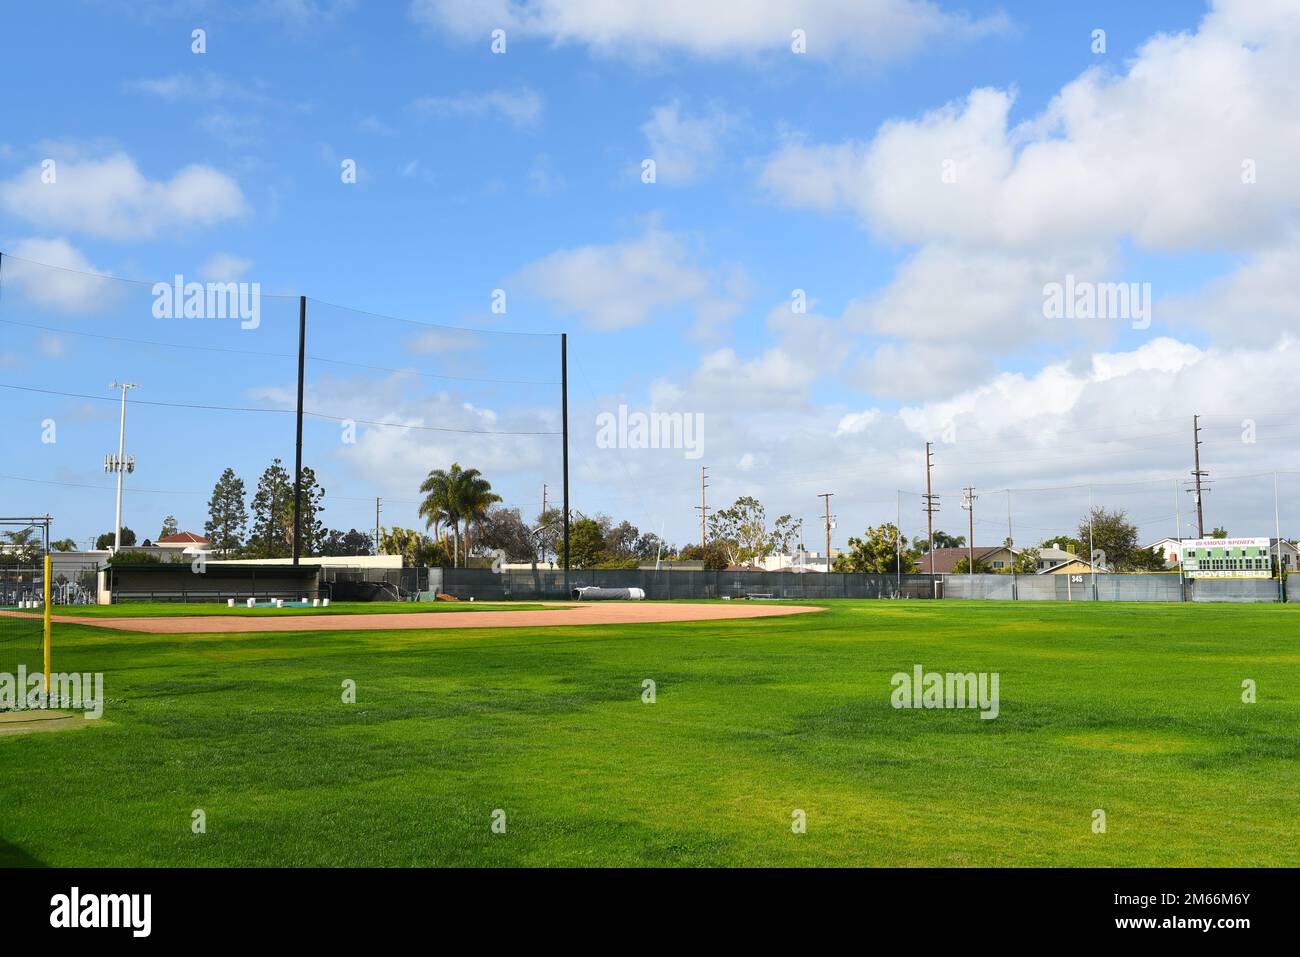 HUNTINGTON BEACH, KALIFORNIEN - 01. JANUAR 2023: Fred Hoover Baseballfeld auf dem Campus des Golden West College, Heimstadion der Rustlers. Stockfoto